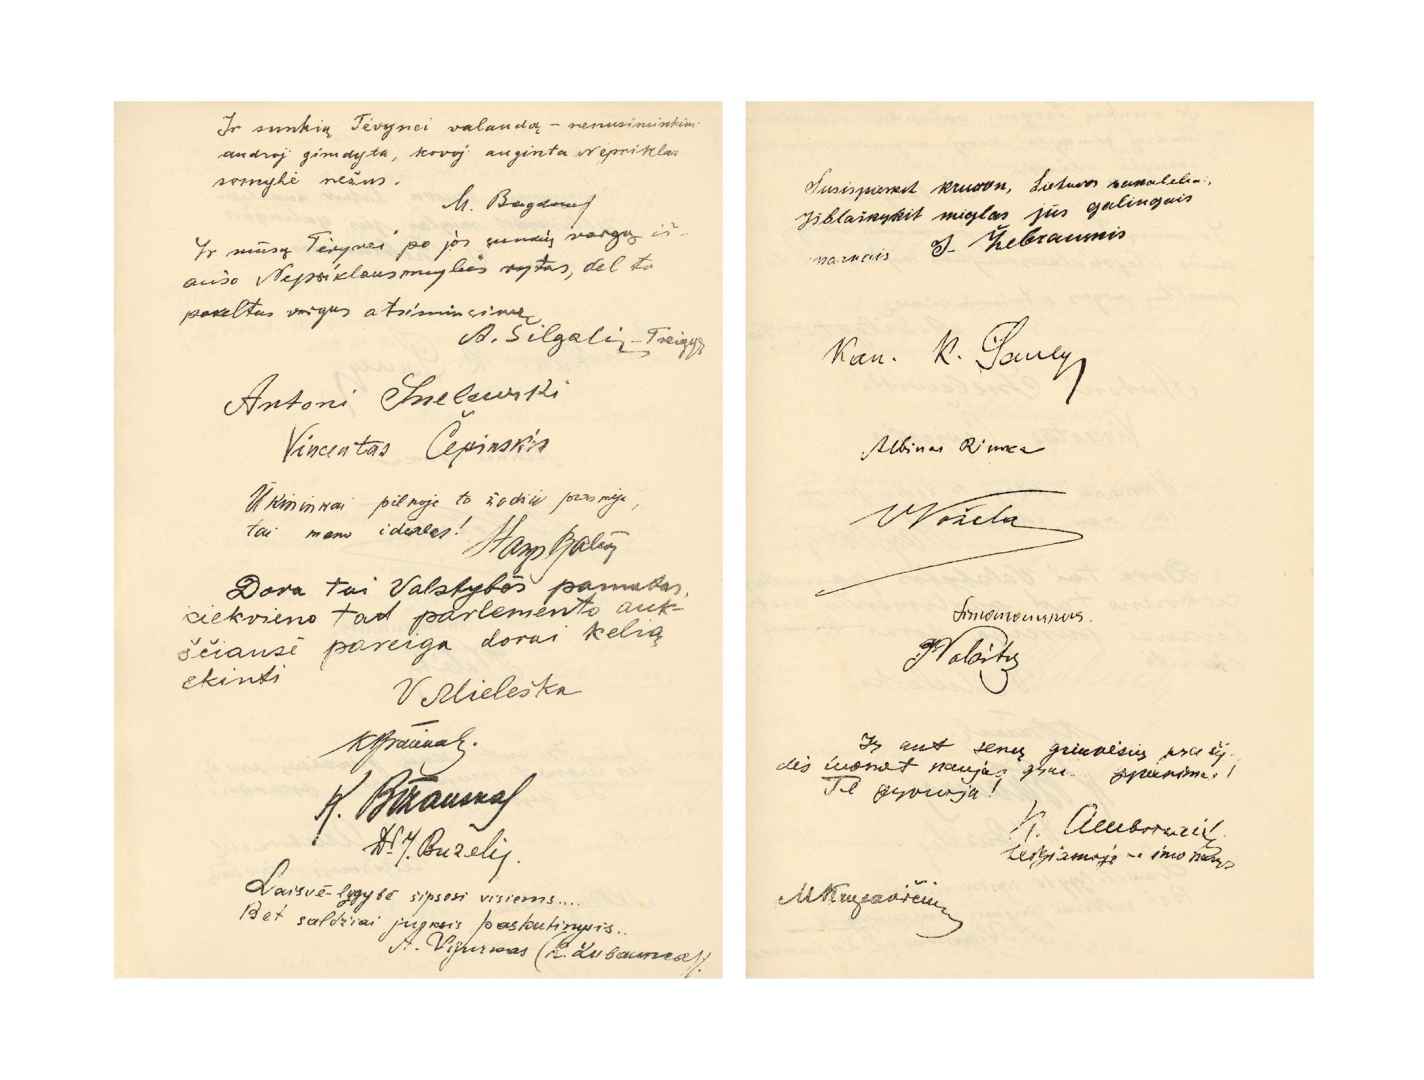 Steigiamojo Seimo narių autografų albumas, skirtas pirmosioms parlamento darbo sukaktuvėms. Kaunas, 1921 m. Lietuvos nacionalinis muziejus